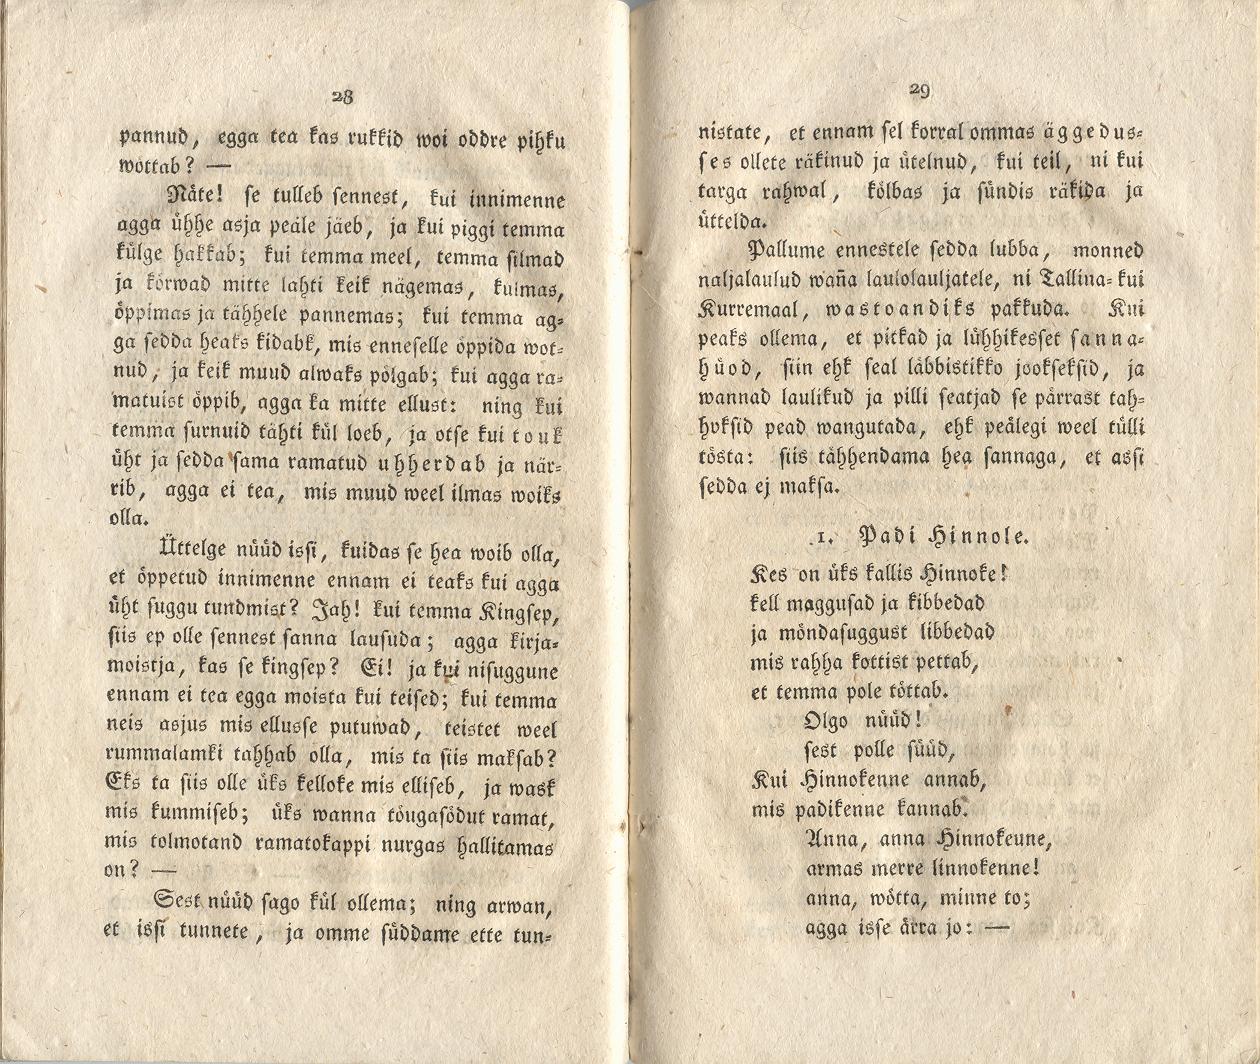 Ehstnische Originalblätter für Deutsche (1816) | 21. (28-29) Main body of text